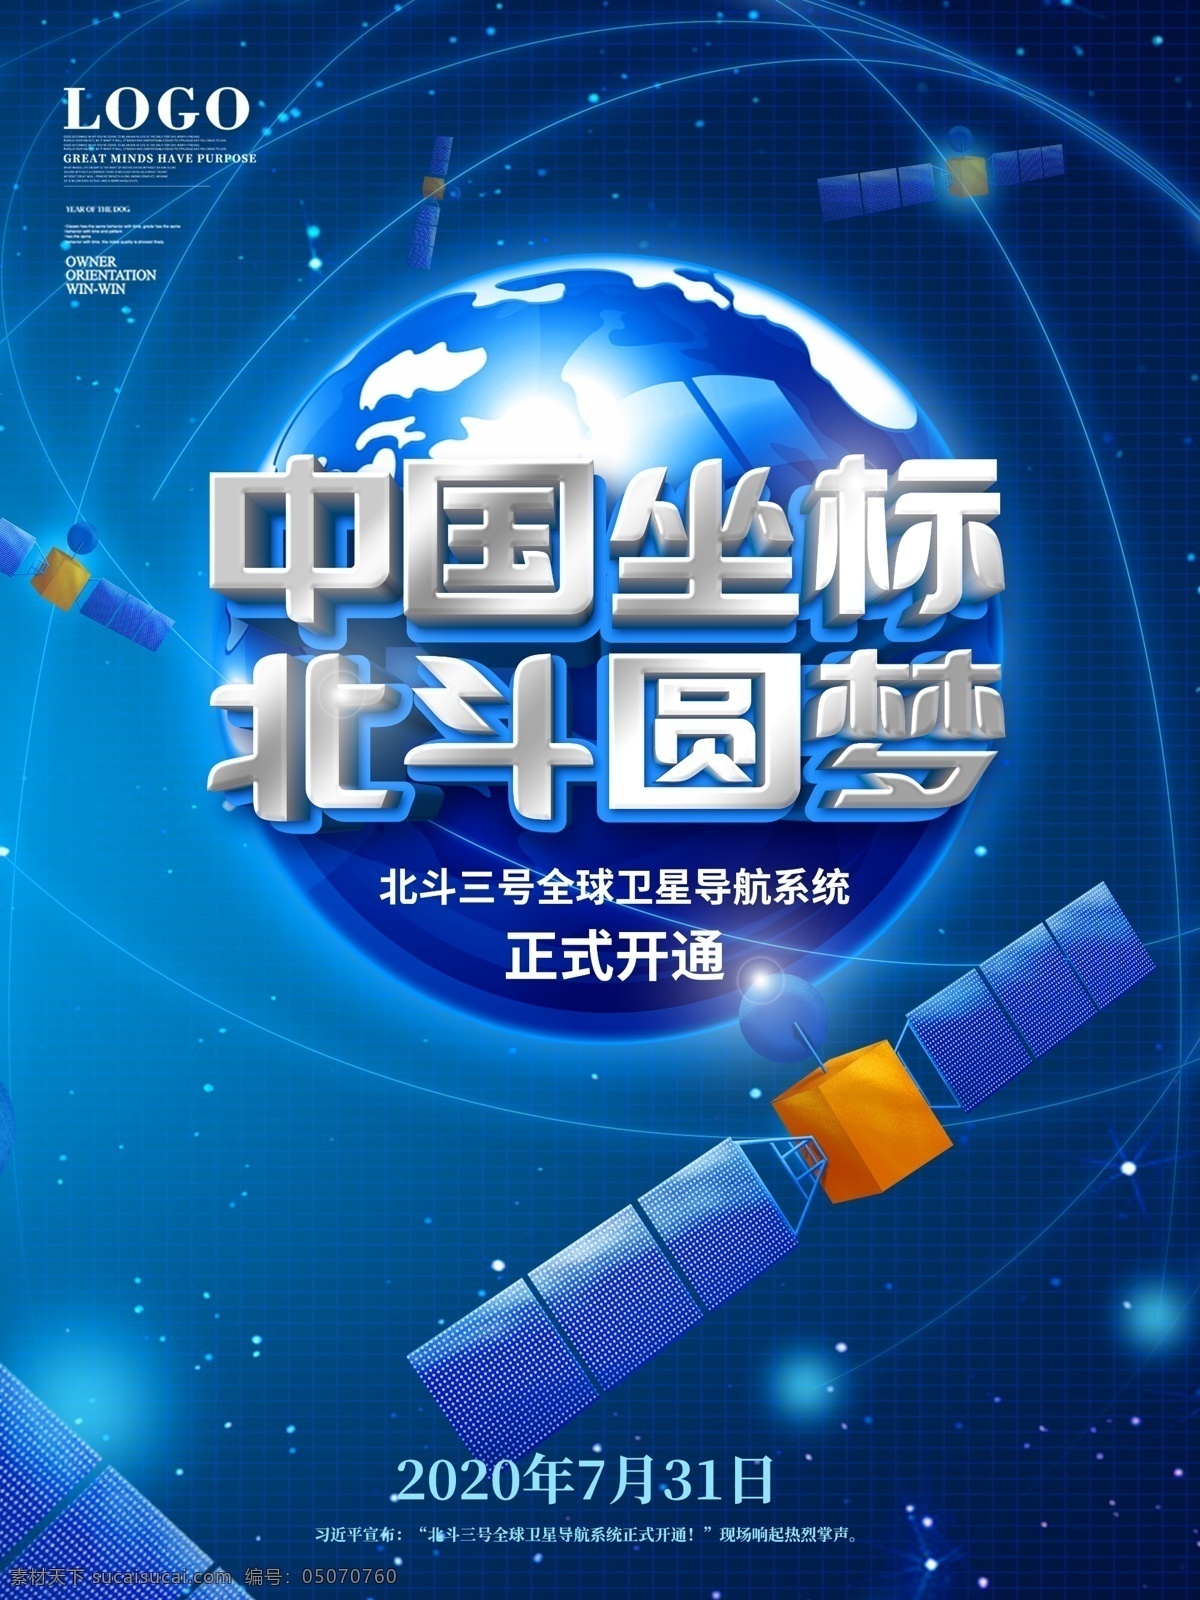 北斗卫星 北斗 北斗三号 中国北斗导航 北斗导航 全球卫星导航 导航系统 导航系统开通 北斗卫星开通 中国航空 中国航天 航空航天 卫星系统 广告